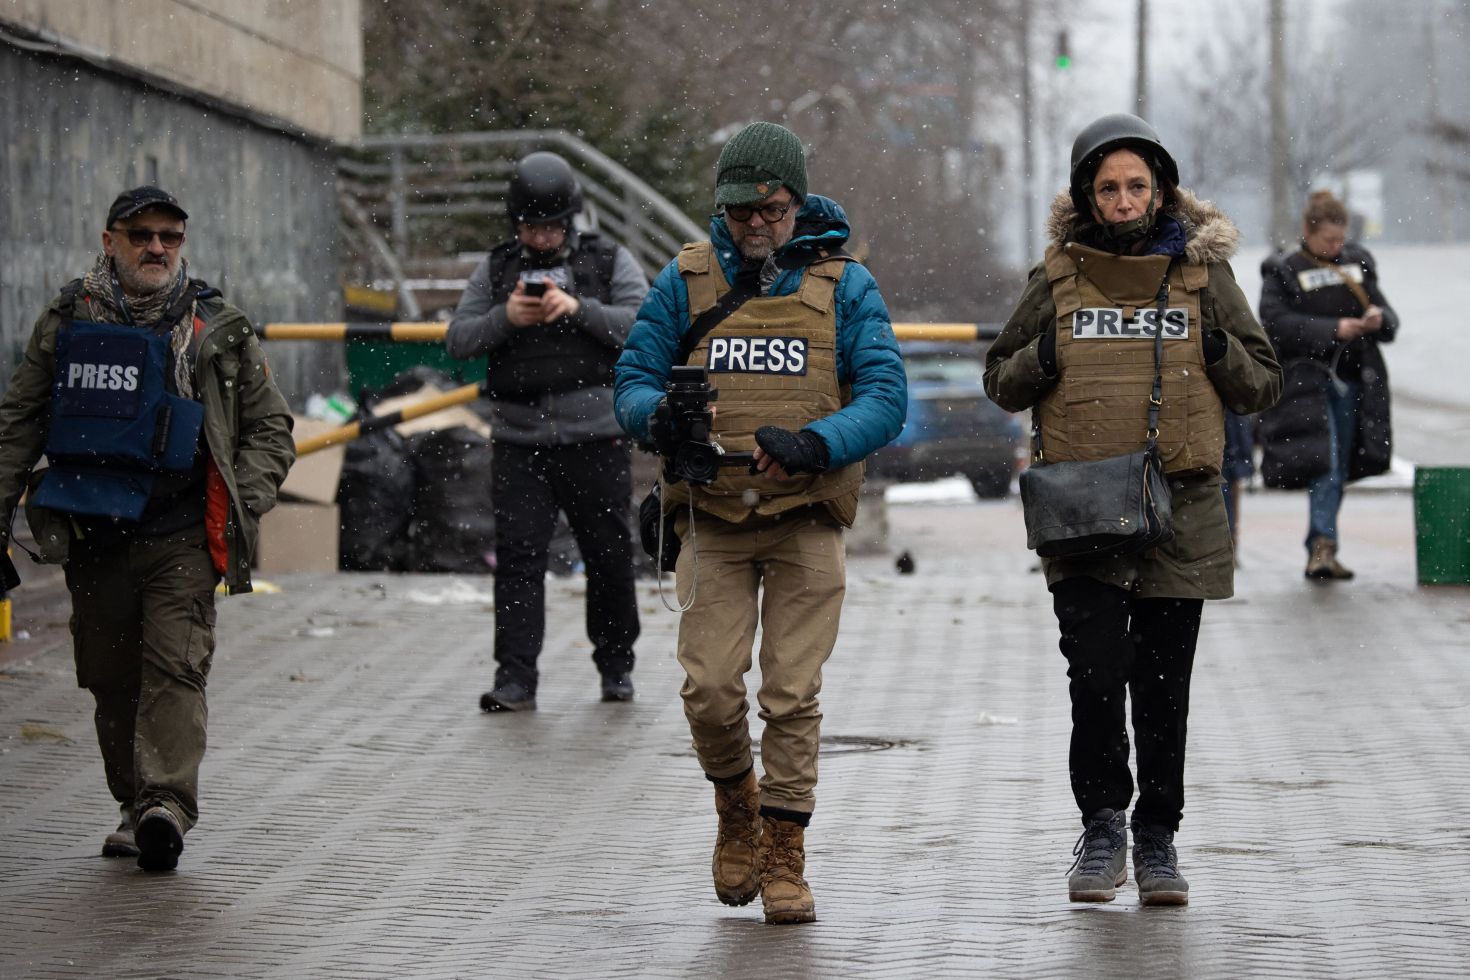 Journalists at work in Ukraine